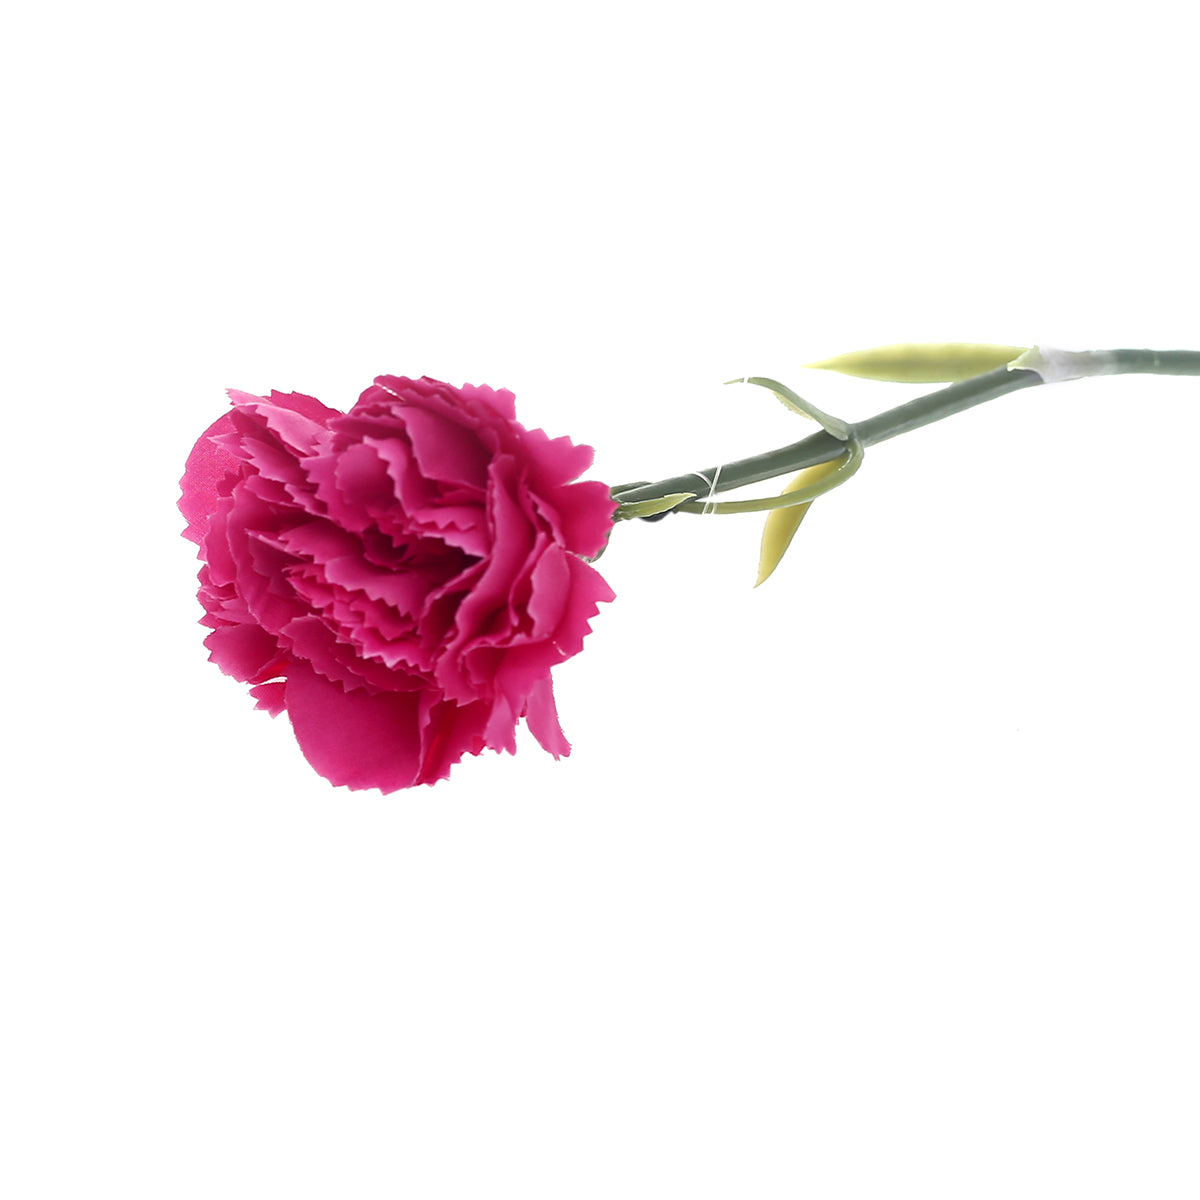 Carnation single flower.Unspecified...22174